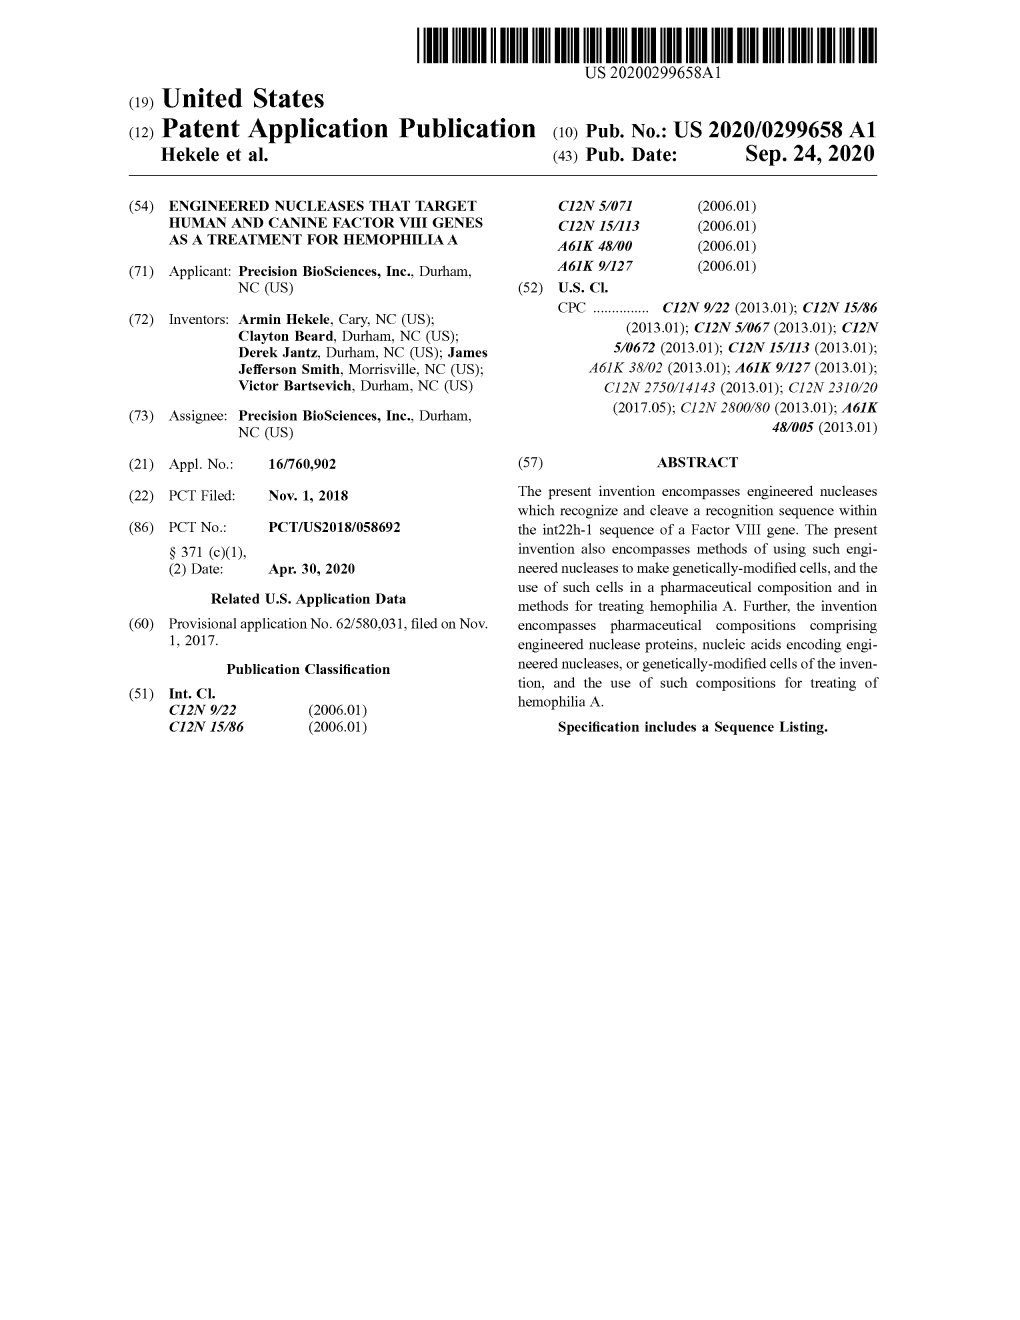 ( 12 ) Patent Application Publication ( 10 ) Pub . No .: US 2020/0299658 A1 Hekele Et Al